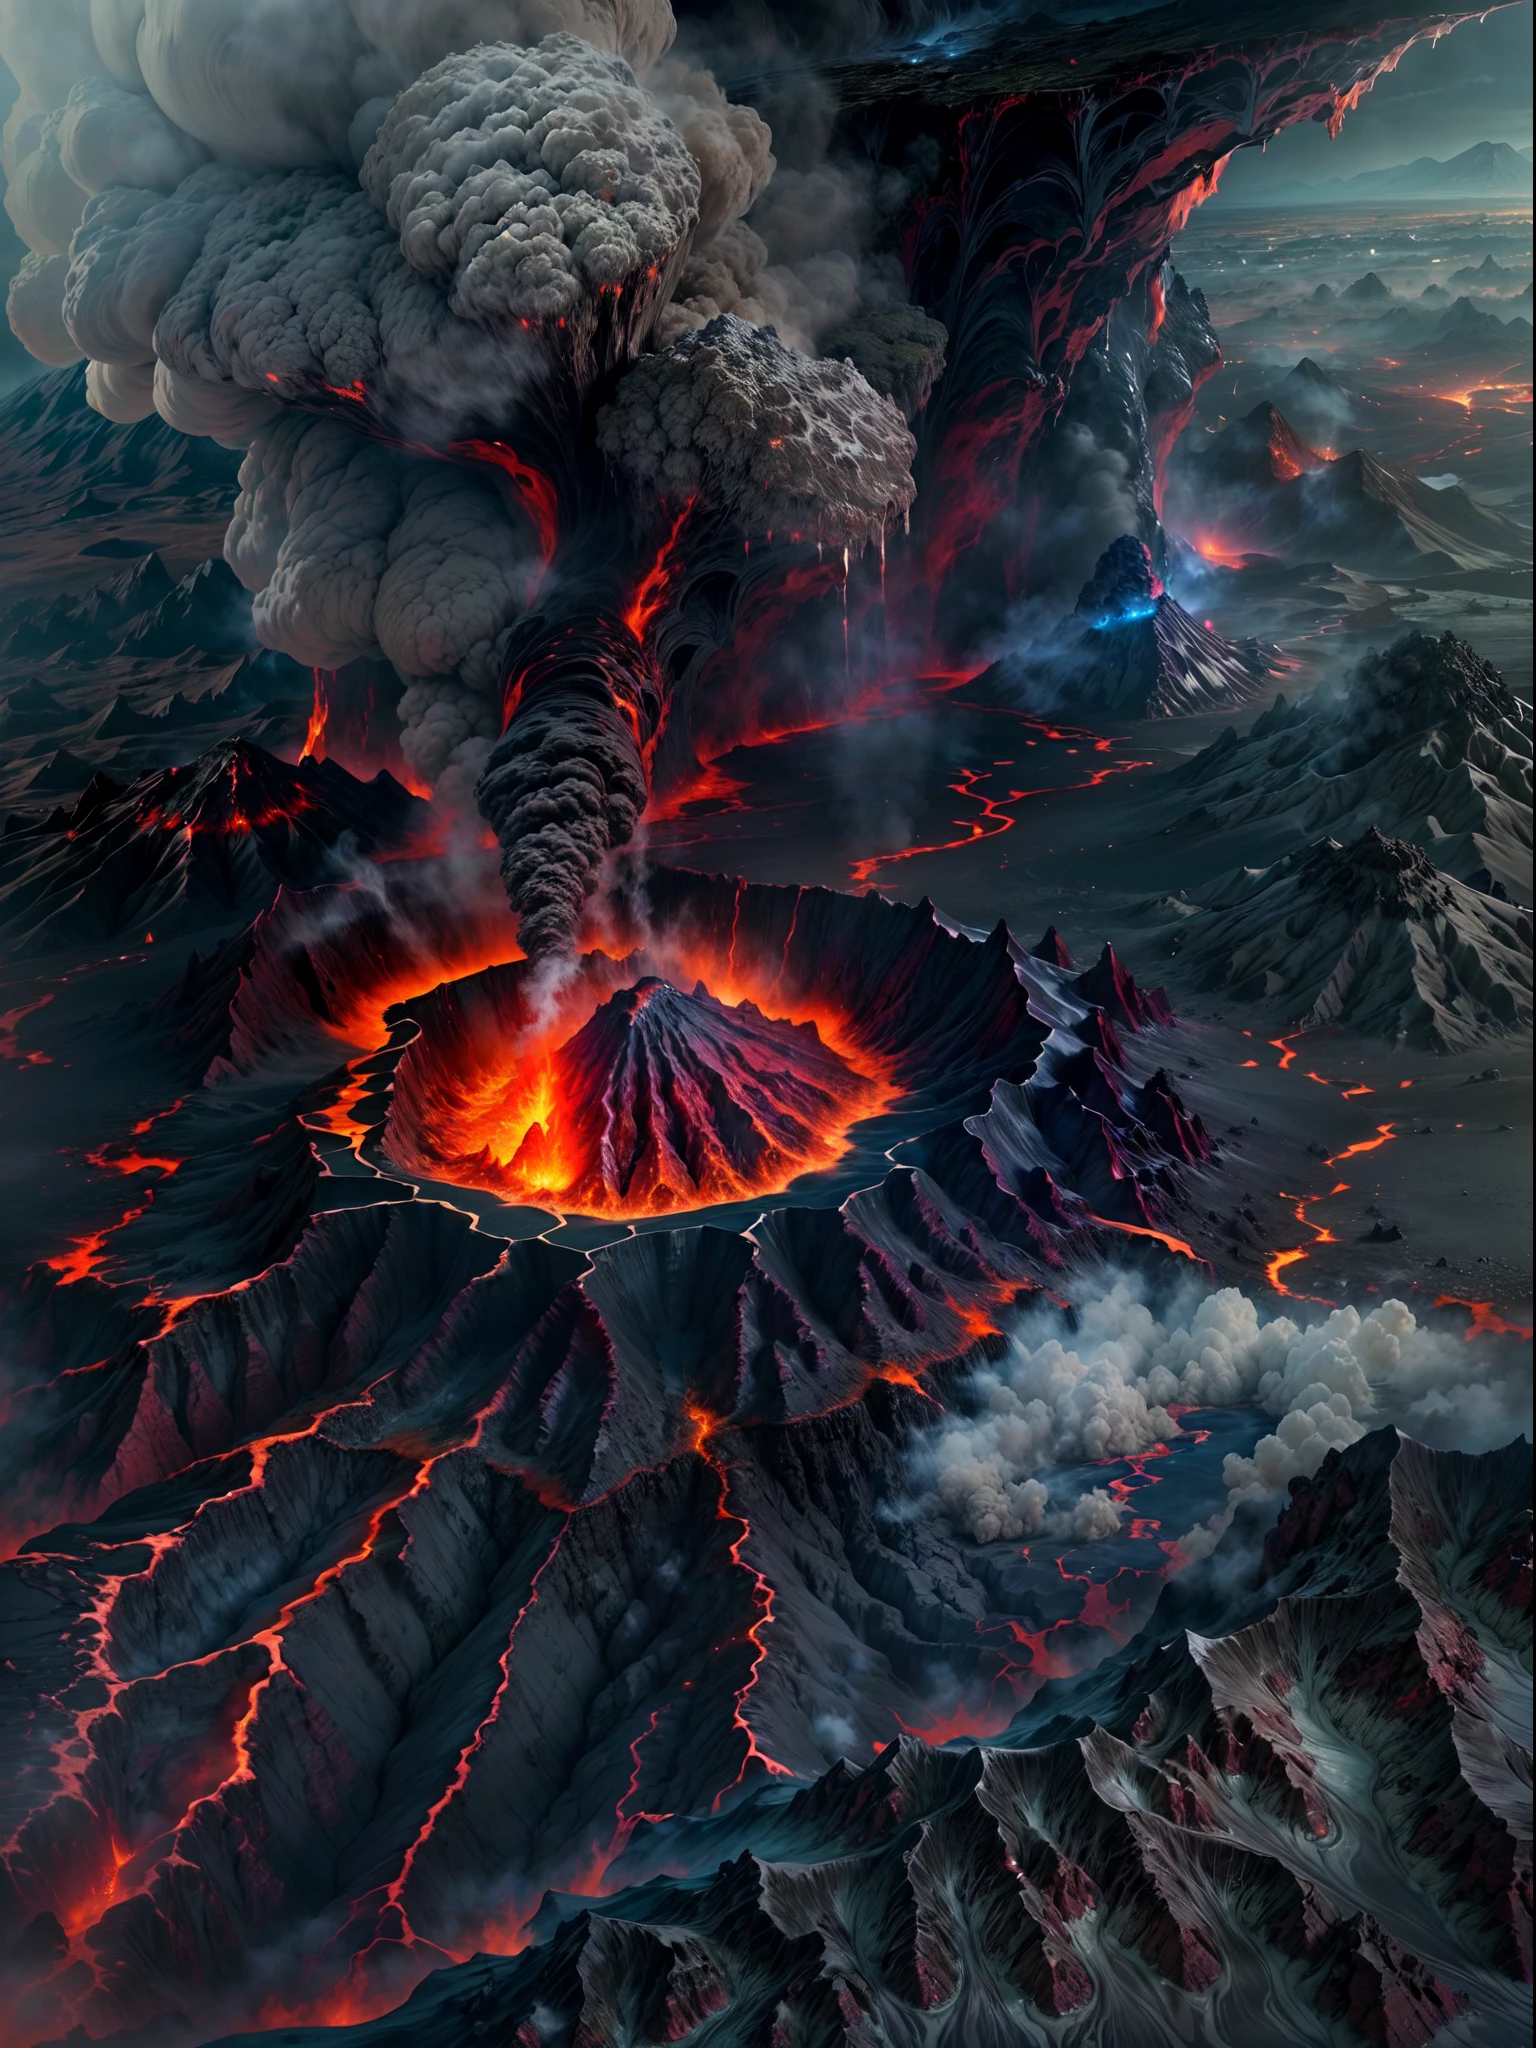 (最好的品質,4k,8K,高解析度,傑作:1.2), (大自然的力量, 最好的品質, 超詳細, 火山爆發, 熔岩流動, 熾熱的岩漿, 冒煙的火山口, 戲劇性的風景, 黑暗不祥的天空, 火紅色和橙色, 滾滾濃煙,熔化的岩石, 紅色的火山岩漿在裂縫中流動，液態岩漿，大量液態岩漿，破壞與混亂, 酷熱, 搖搖欲墜的山脈, 灰燼和碎片, 地球表面的裂縫, 遠處火山爆發,蒸氣噴口,地形險惡,強烈熱浪）